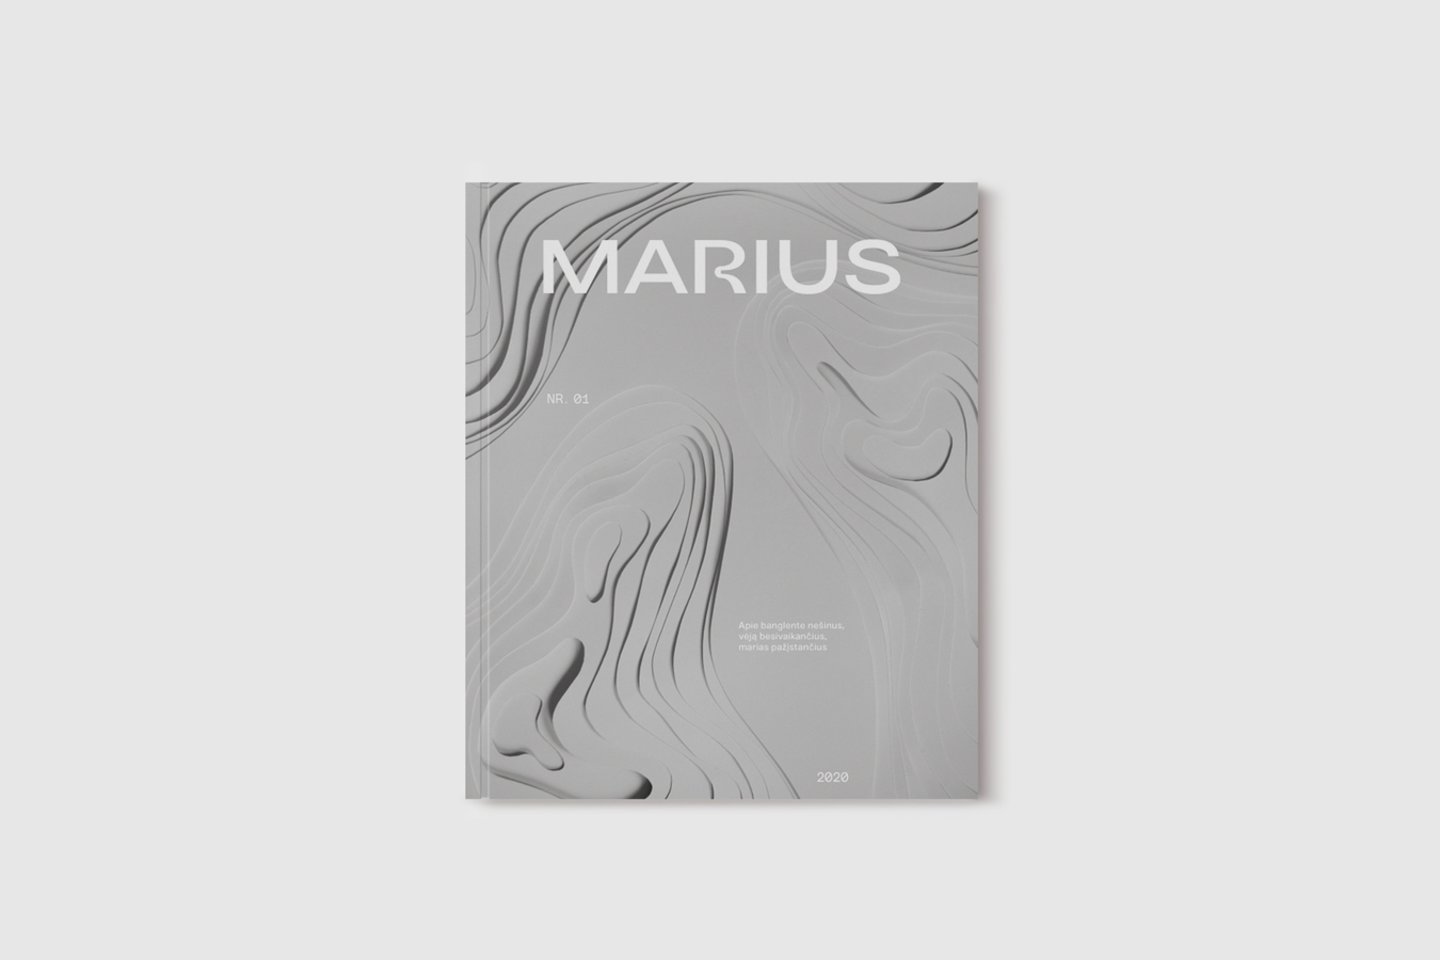  Žurnalas "Marius".<br> Marius Mag nuotr.